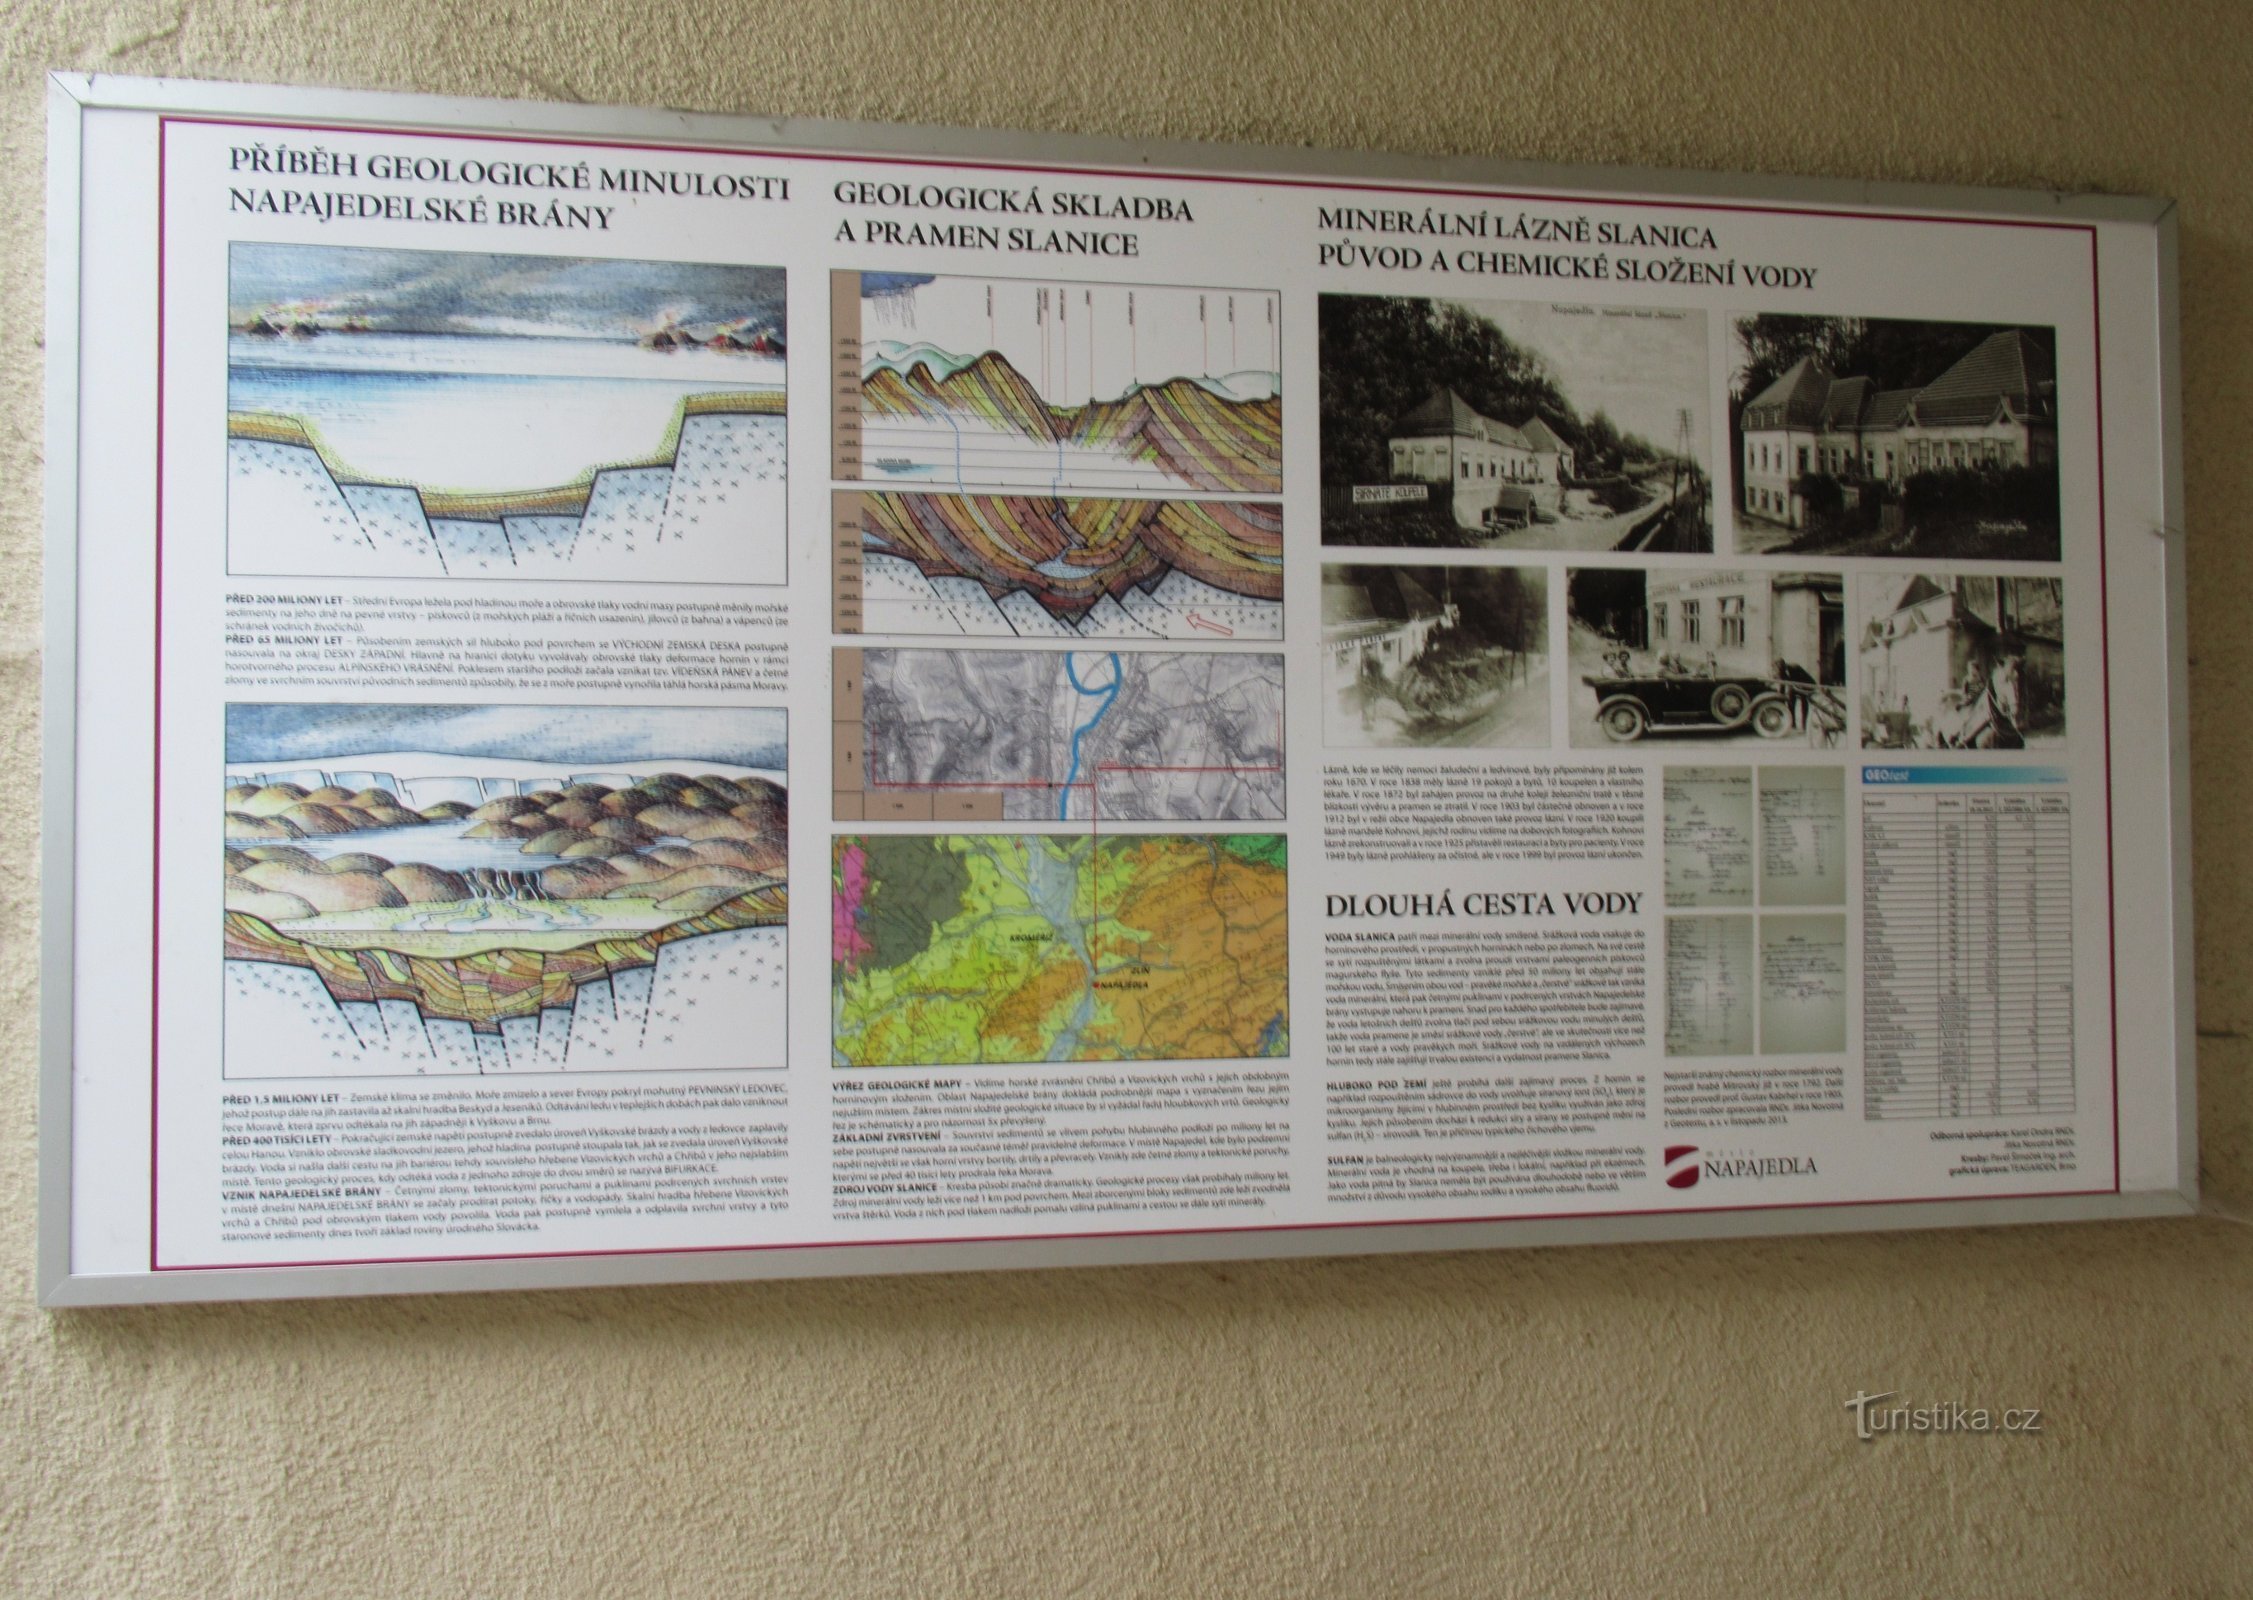 Napajedlý 的矿泉 Slanica